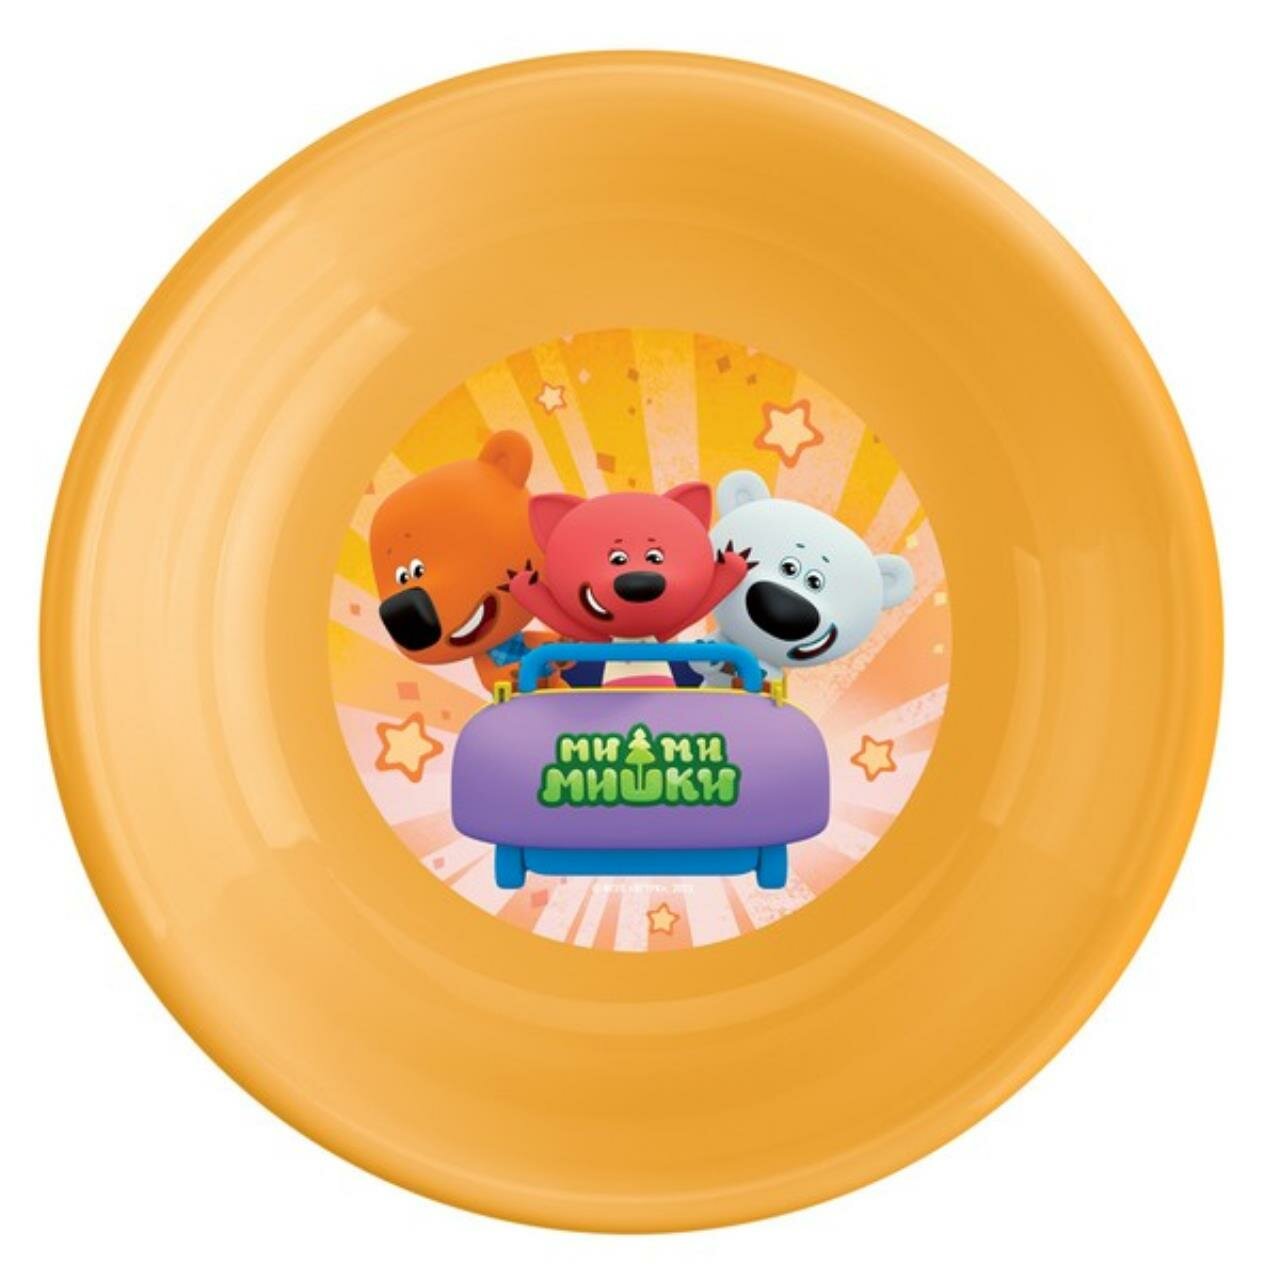 Тарелка глубокая детская с декором "Ми-Ми-Мишки", цвет: оранжевый, 18,6x18,6x4,4 см